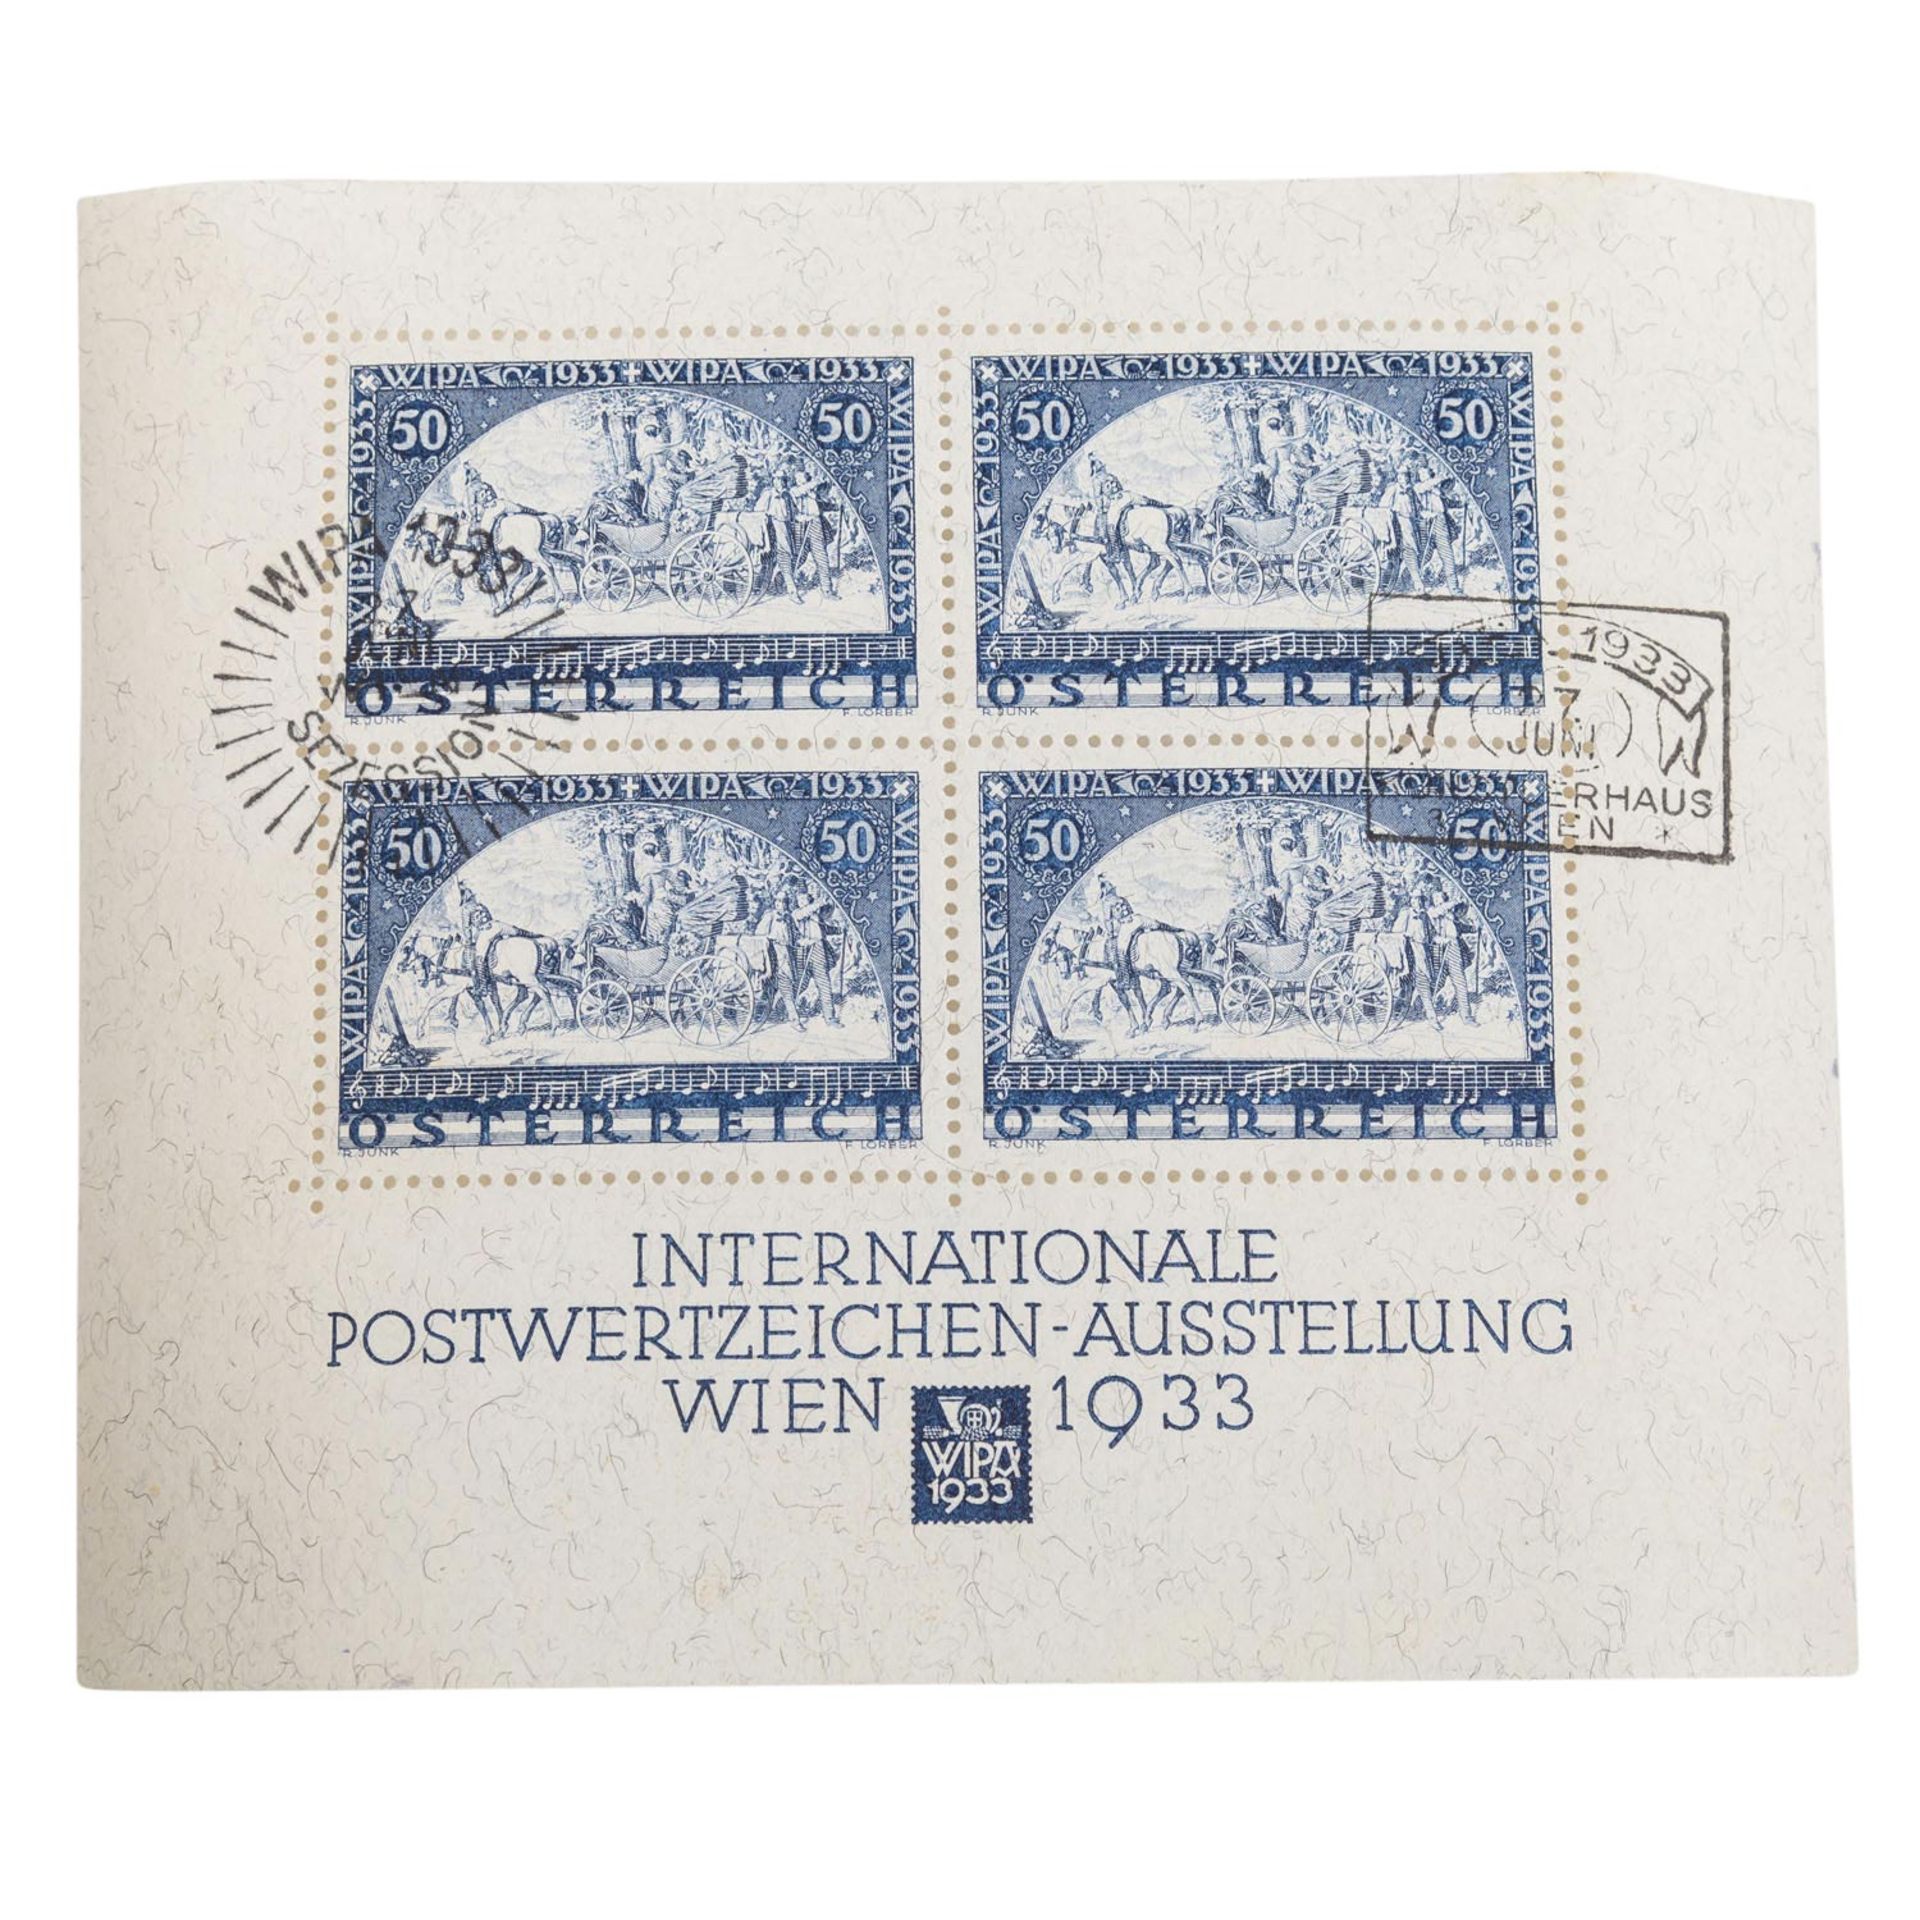 Österreich – 1933, WIPA Block Ausgabe, - Bild 2 aus 2